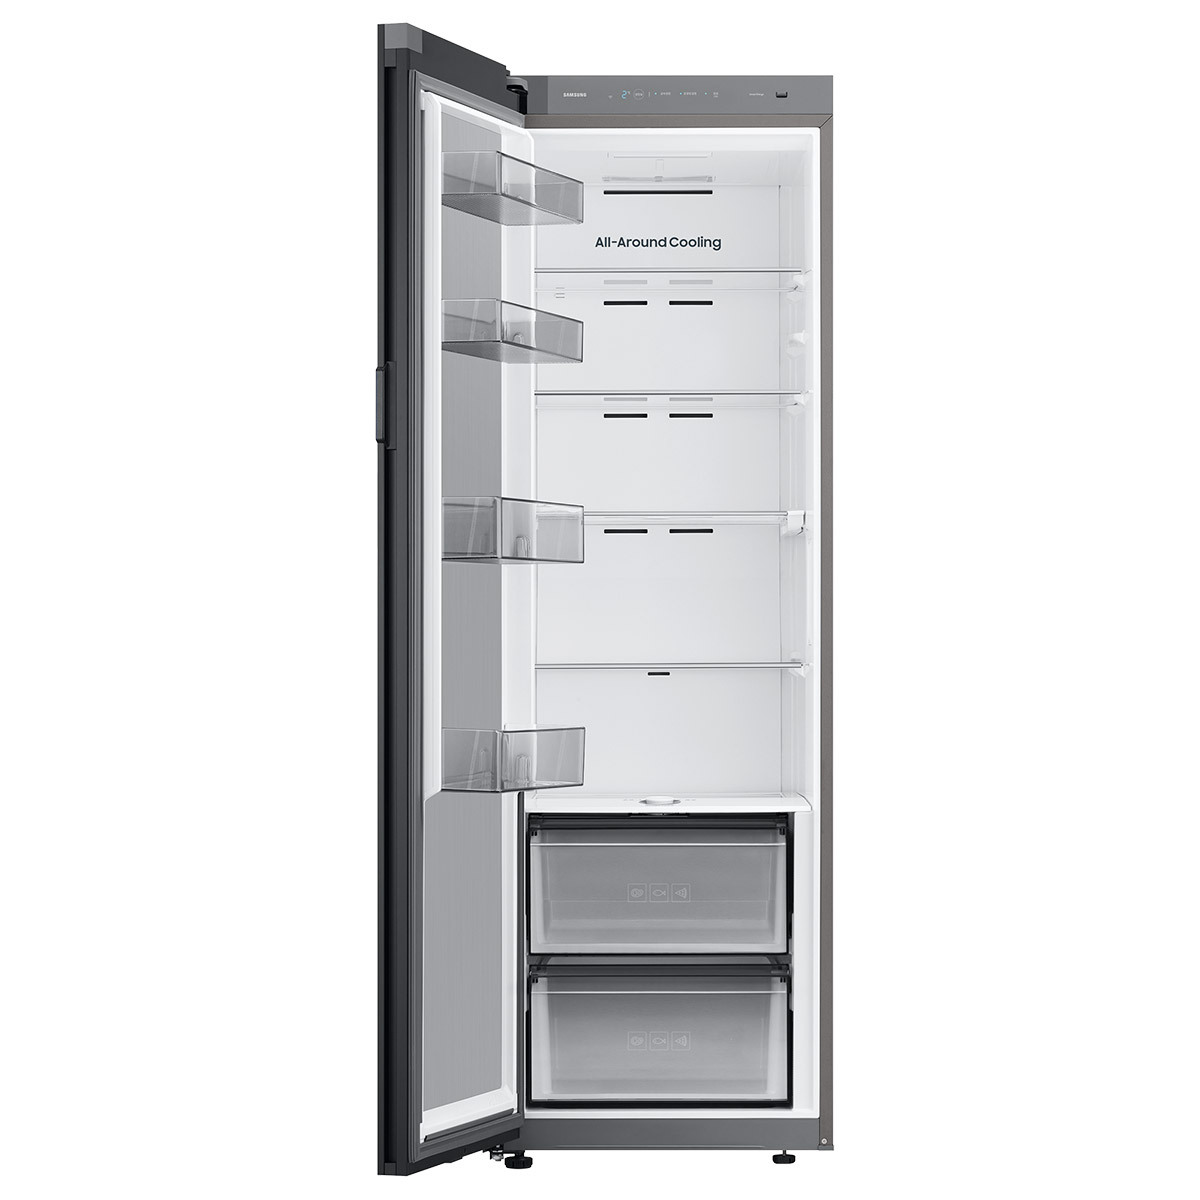 삼성 비스포크 키친핏 냉장고 409L-좌힌지(우열림)